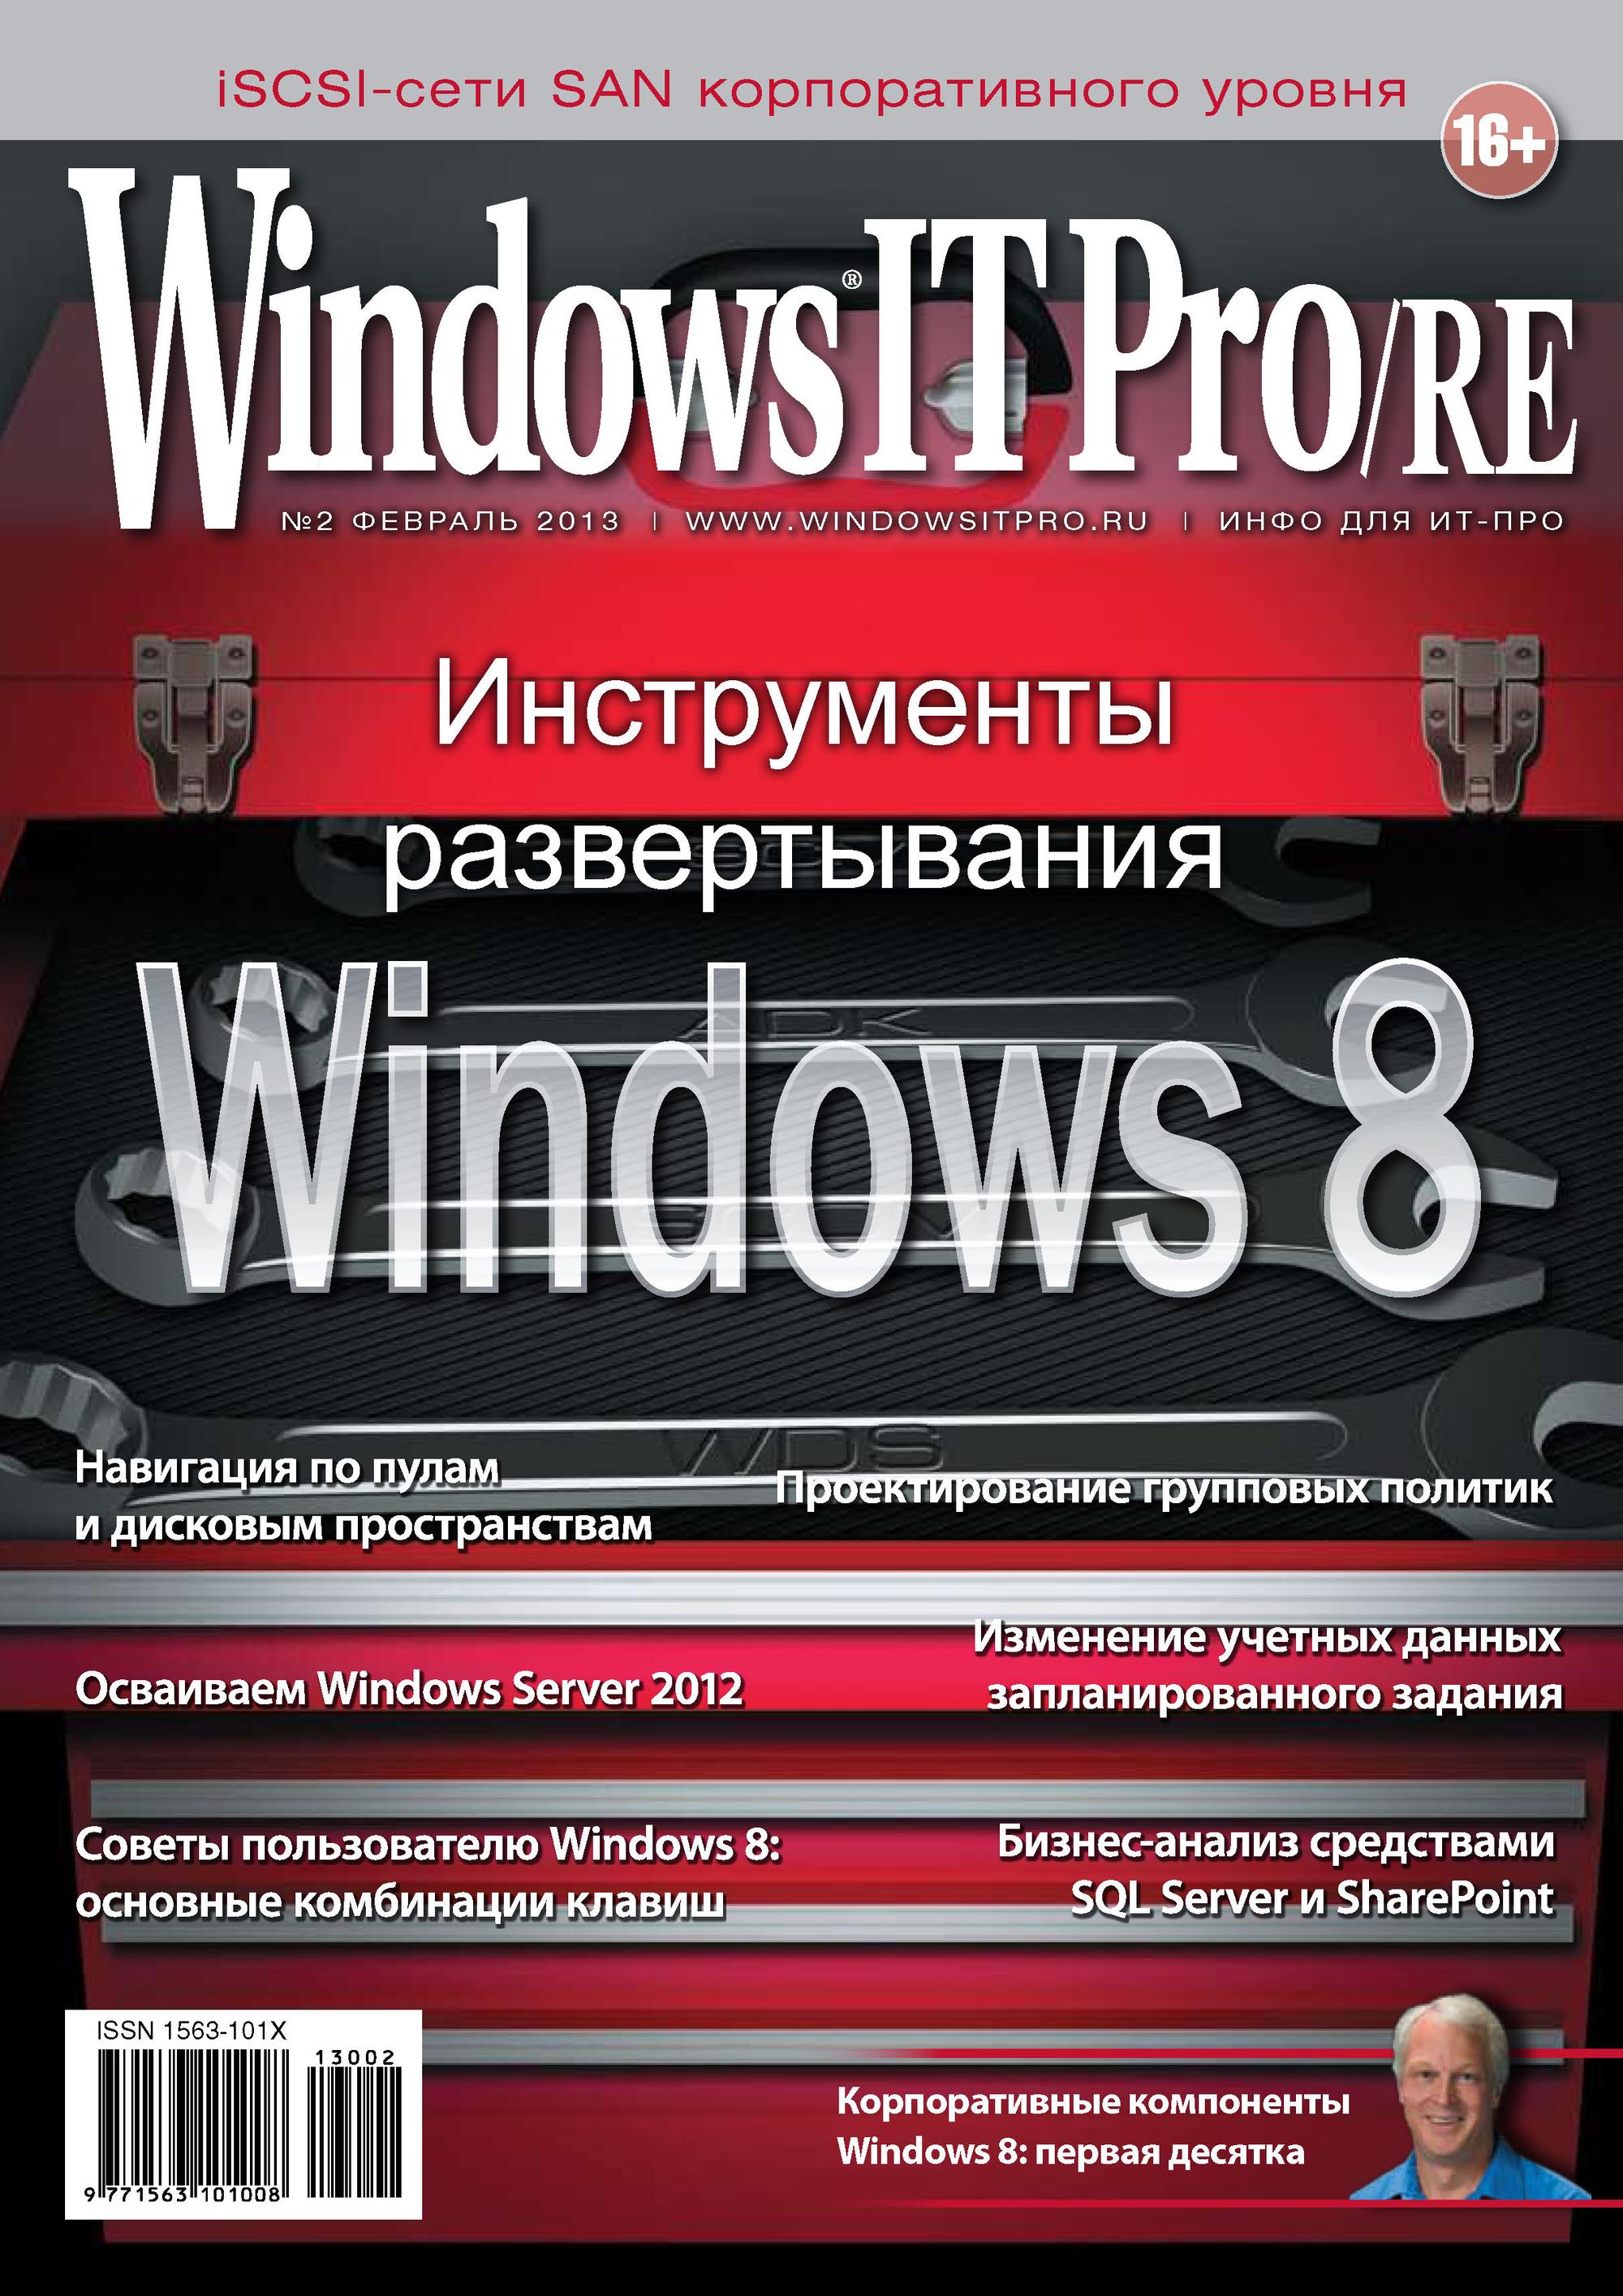 Книга Windows IT Pro 2013 Windows IT Pro/RE №02/2013 созданная Открытые системы, Открытые системы может относится к жанру компьютерные журналы, ОС и сети. Стоимость электронной книги Windows IT Pro/RE №02/2013 с идентификатором 4961268 составляет 484.00 руб.